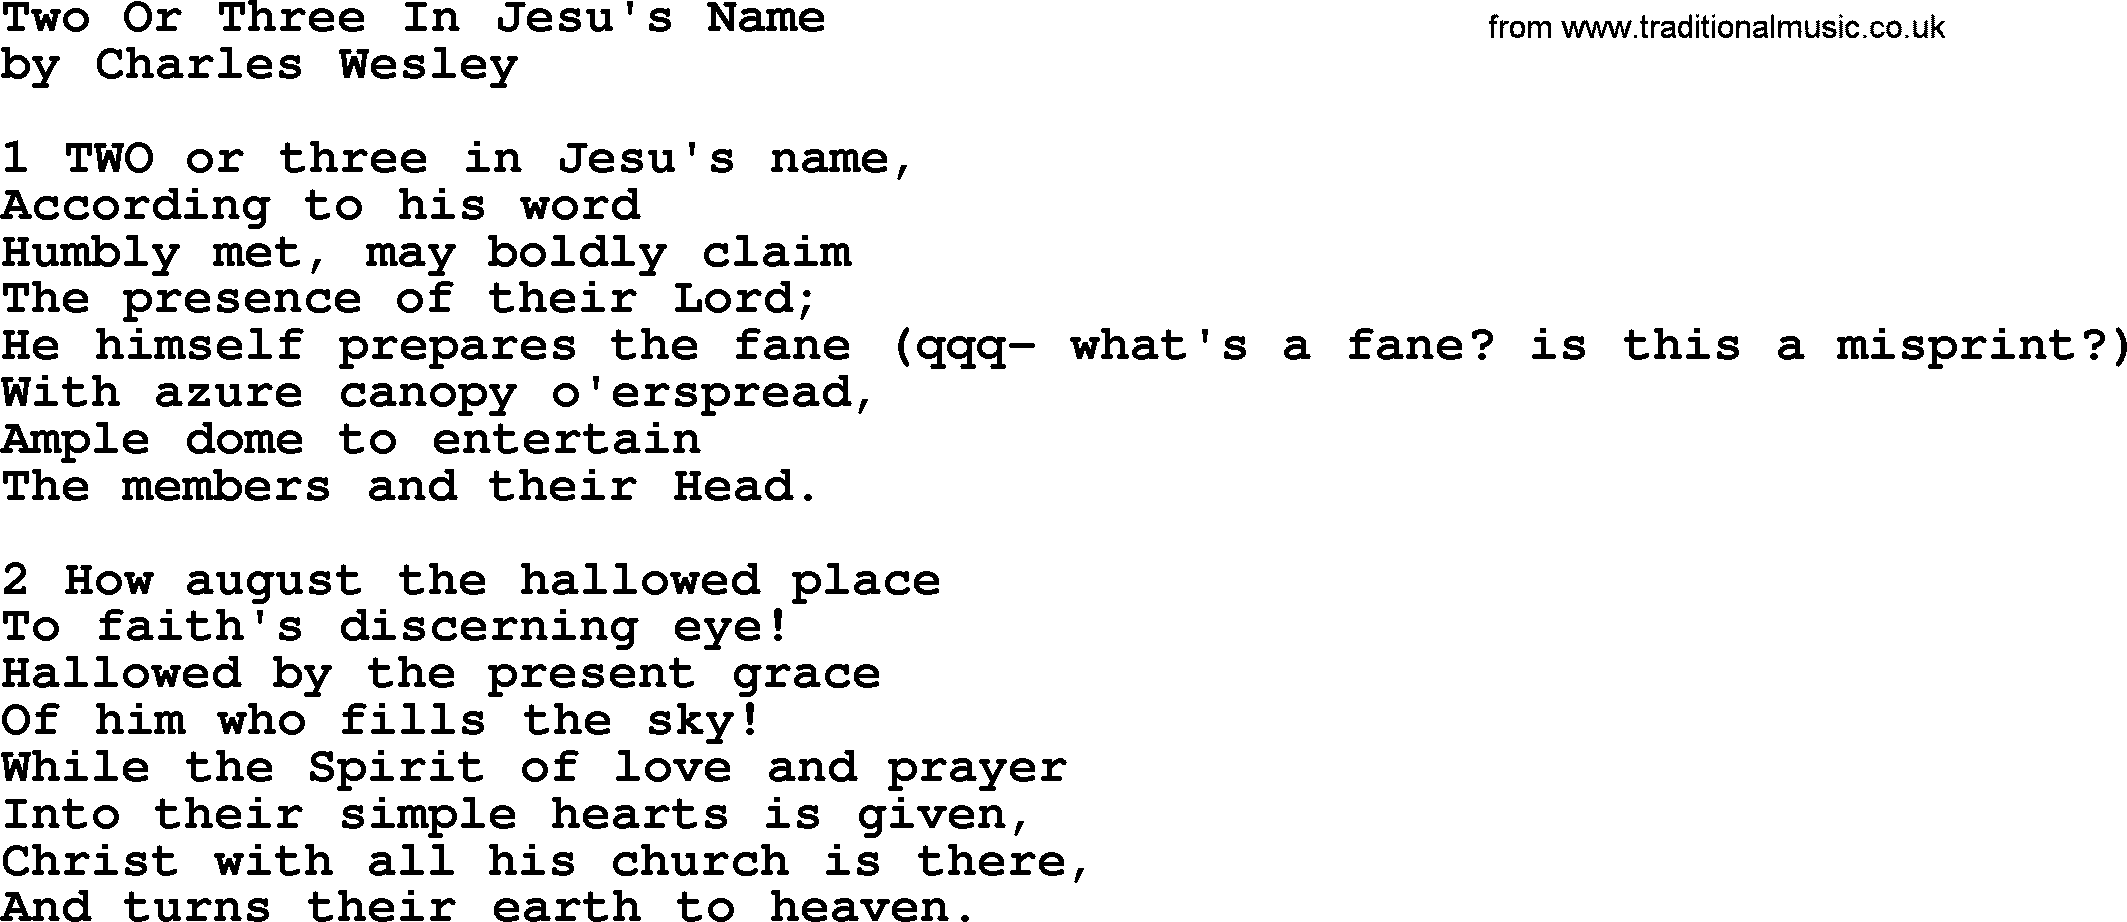 Charles Wesley hymn: Two Or Three In Jesu's Name, lyrics